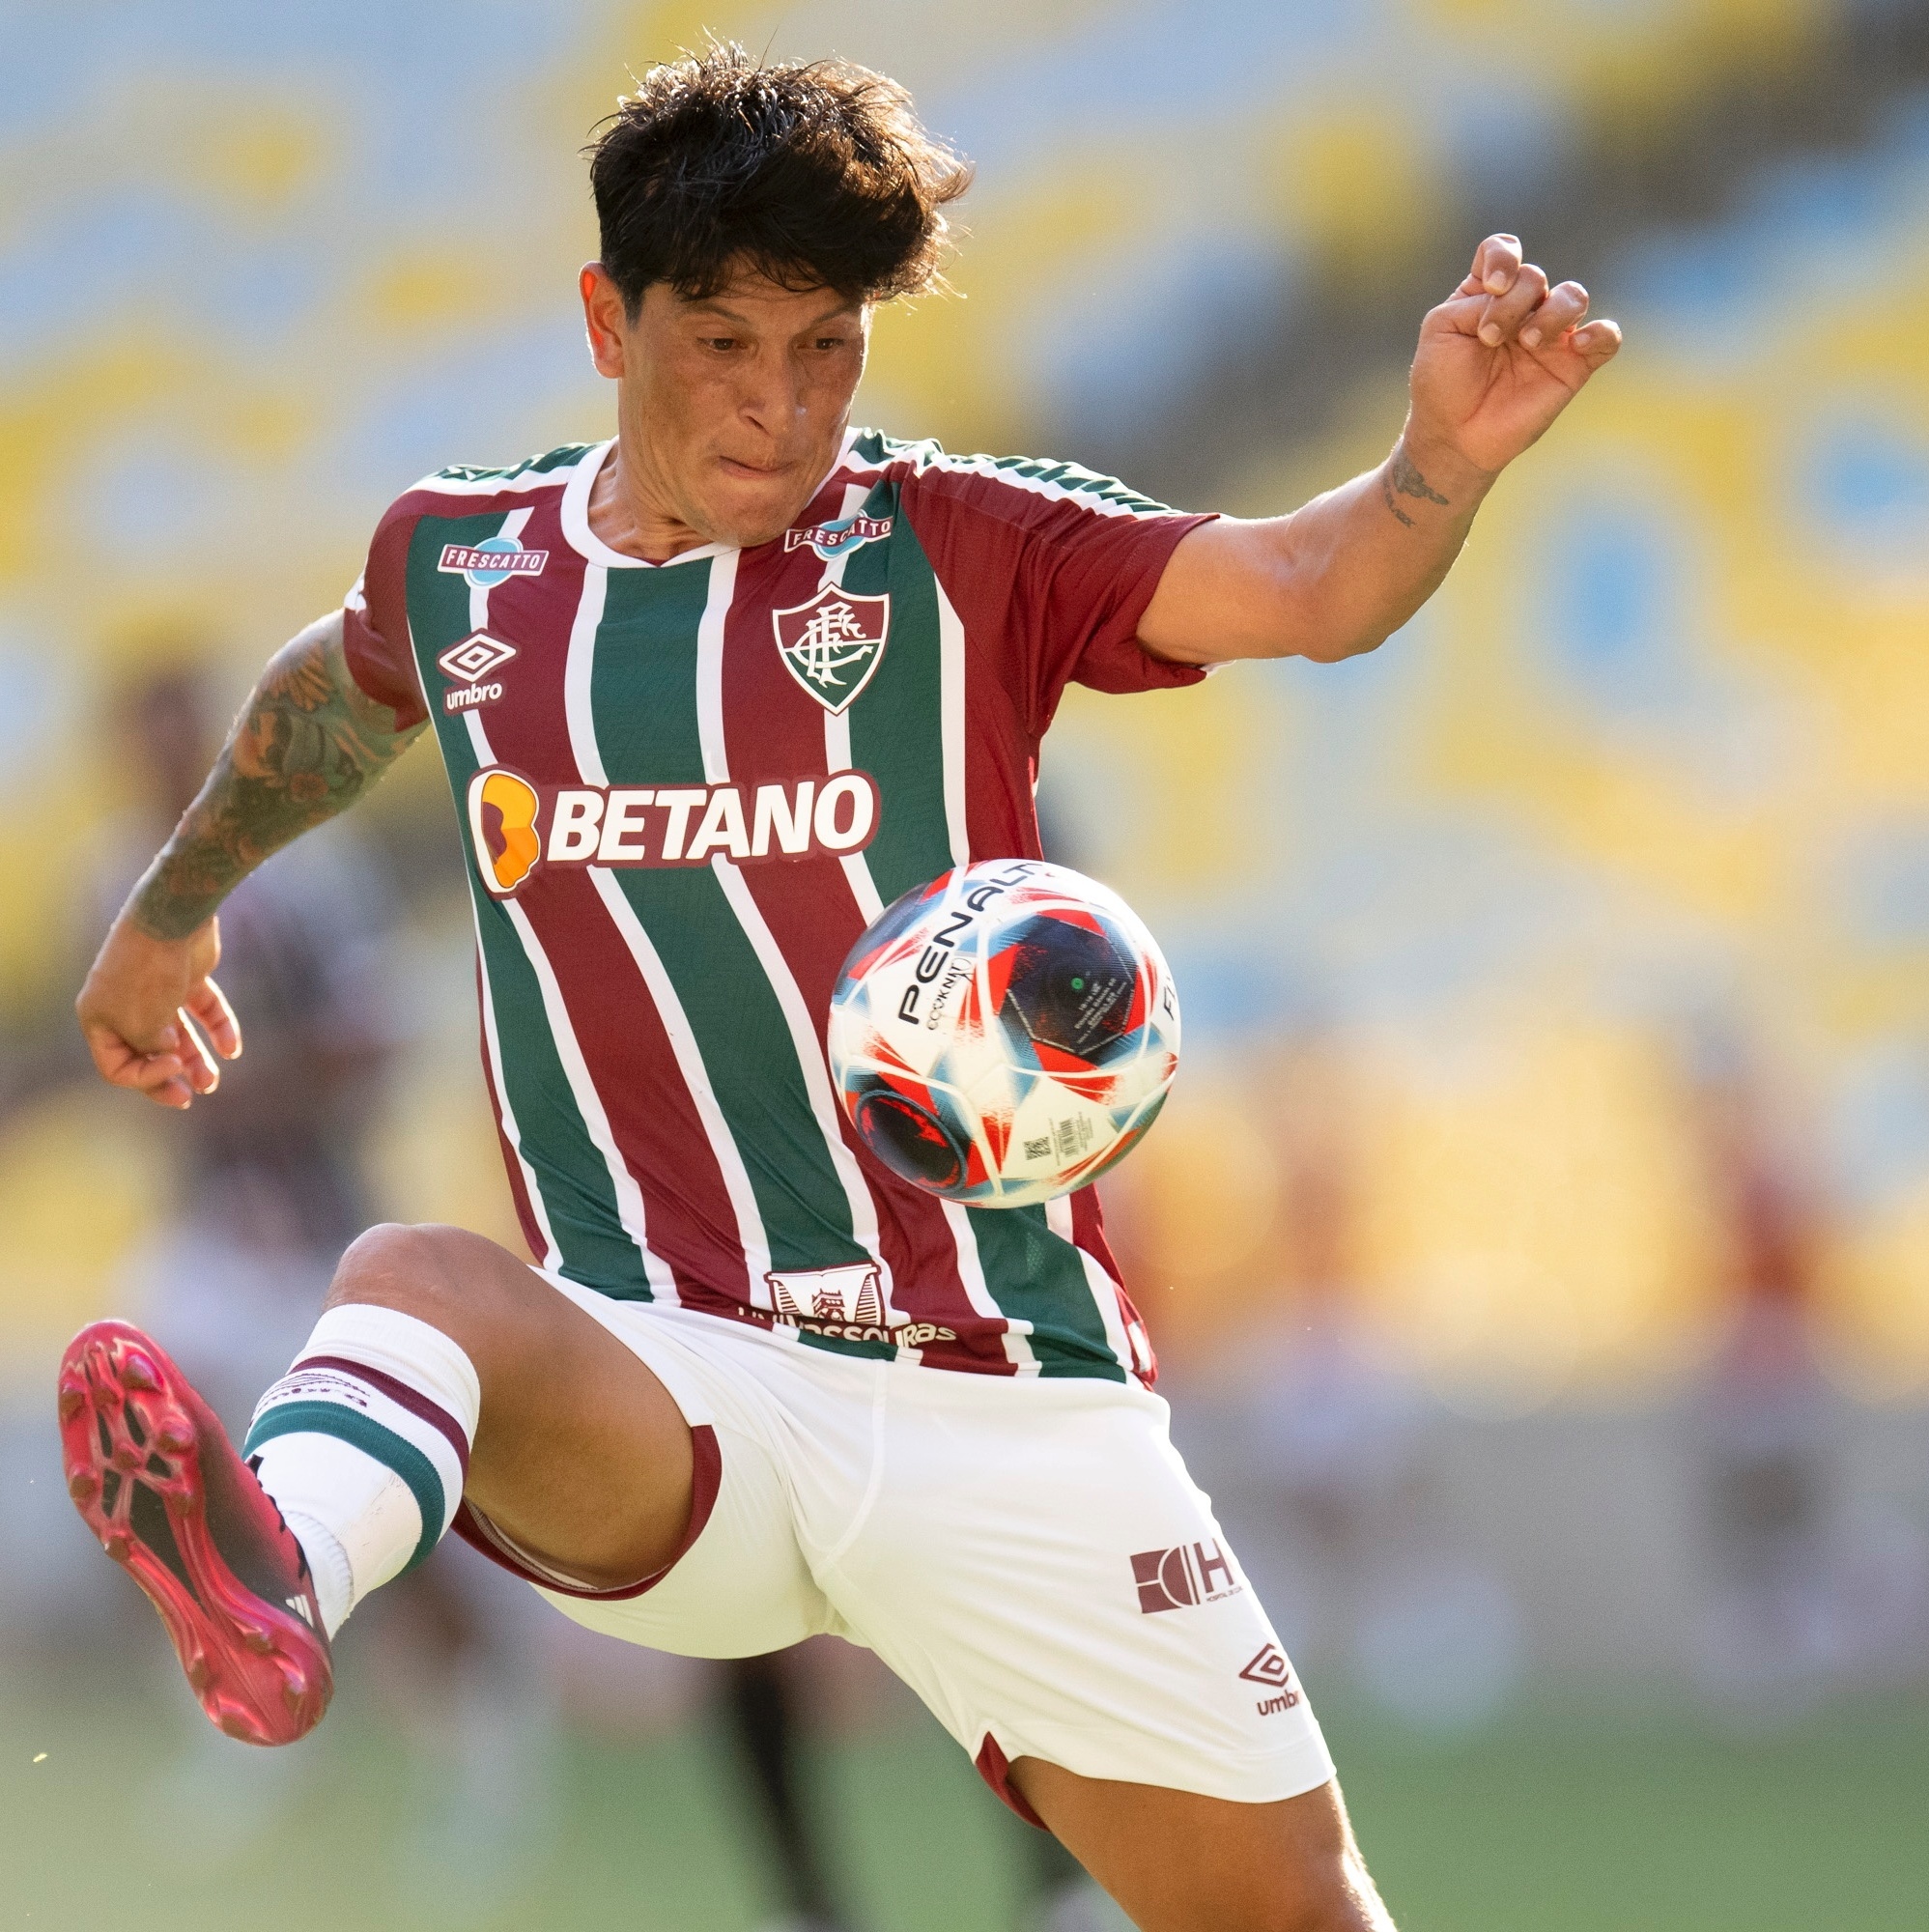 Técnico do Paysandu: Flu joga, hoje, o melhor futebol do Brasil -  Fluminense: Últimas notícias, vídeos, onde assistir e próximos jogos